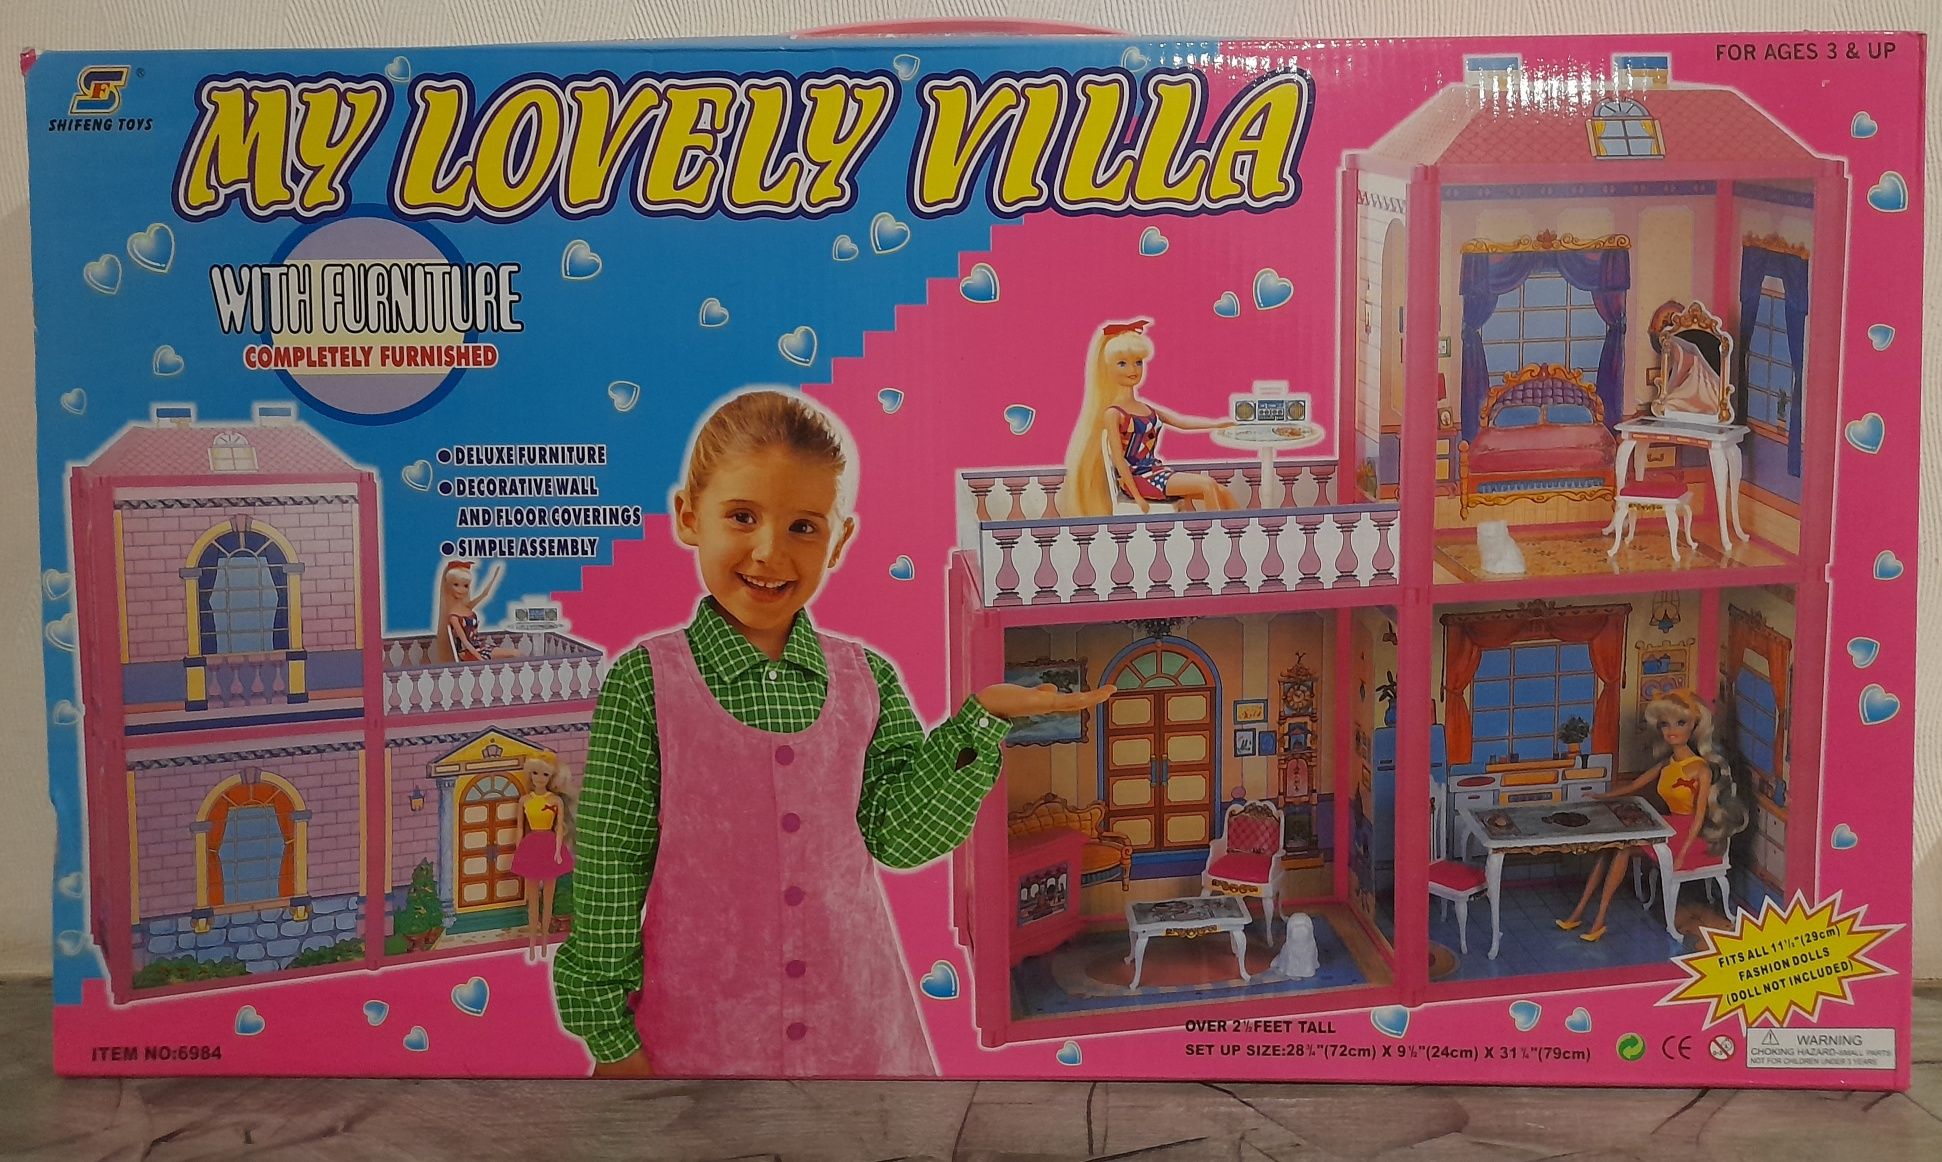 Іграшковий будиночок для ляльок